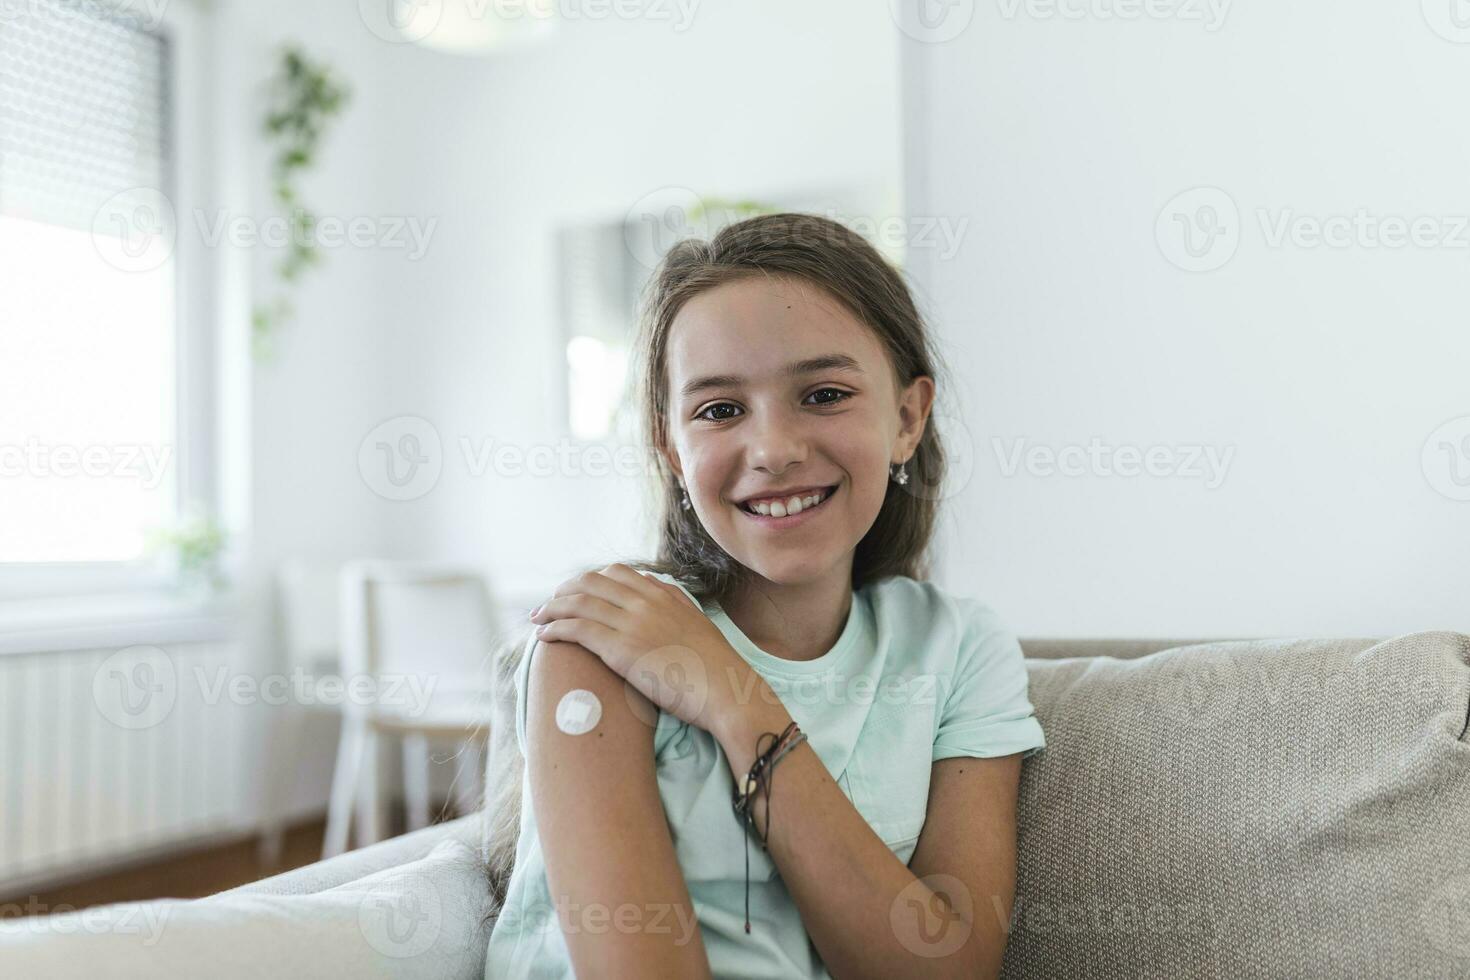 adhésif bandage sur bras après injection vaccin ou médecine, adhésif des pansements plâtre - médical équipement, doux concentrer adhésif bandage sur une femelle brachium après covid-19 vaccination photo